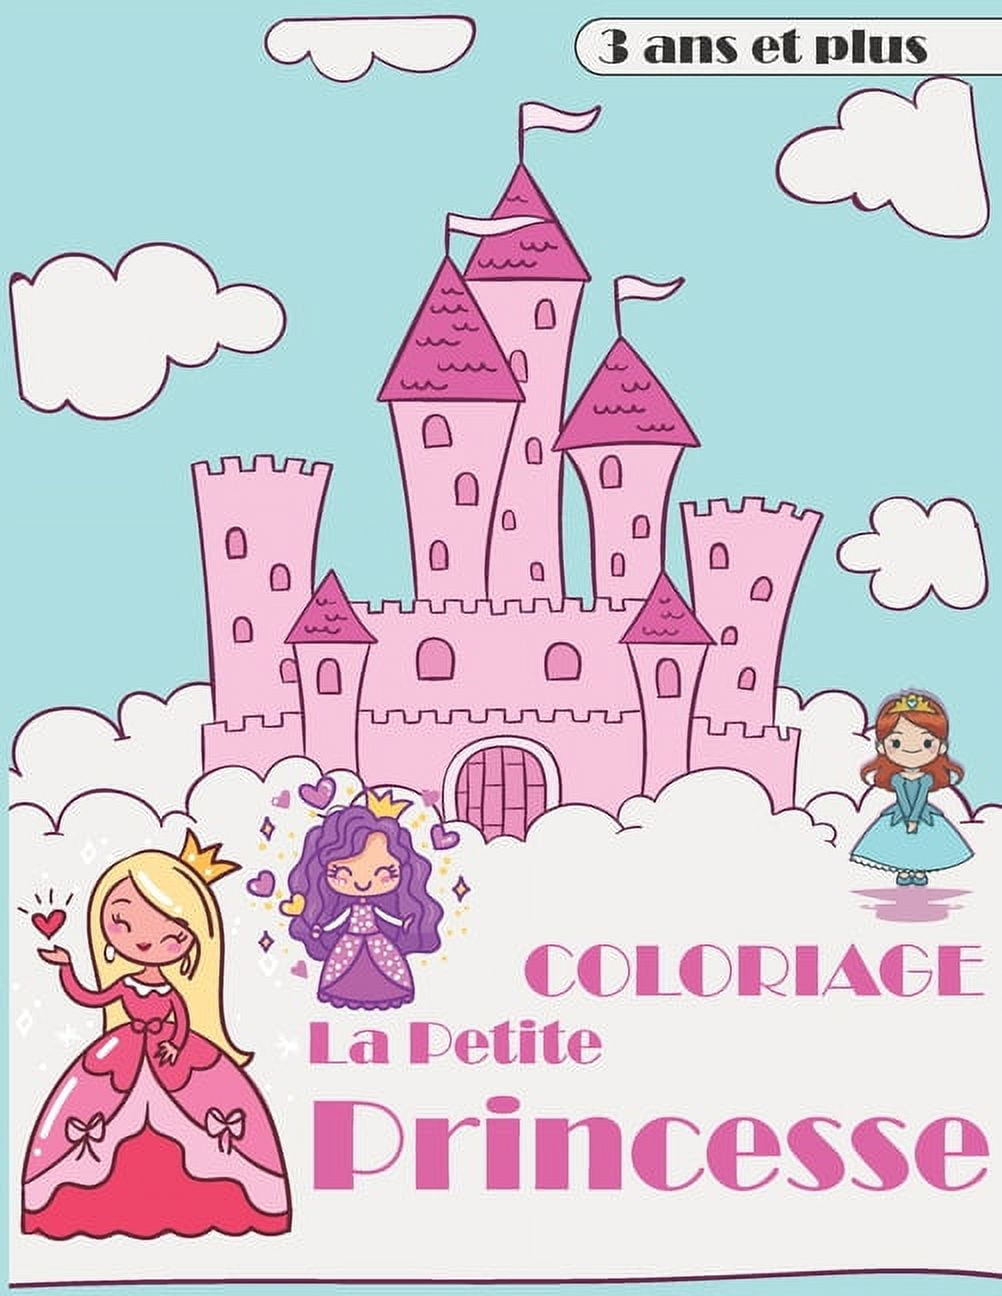 coloriage la petite princesse 3 ans et plus: livre de coloriage des petites  princesses grande taille pour les petites filles de 3 ans et plus.  (Paperback) 